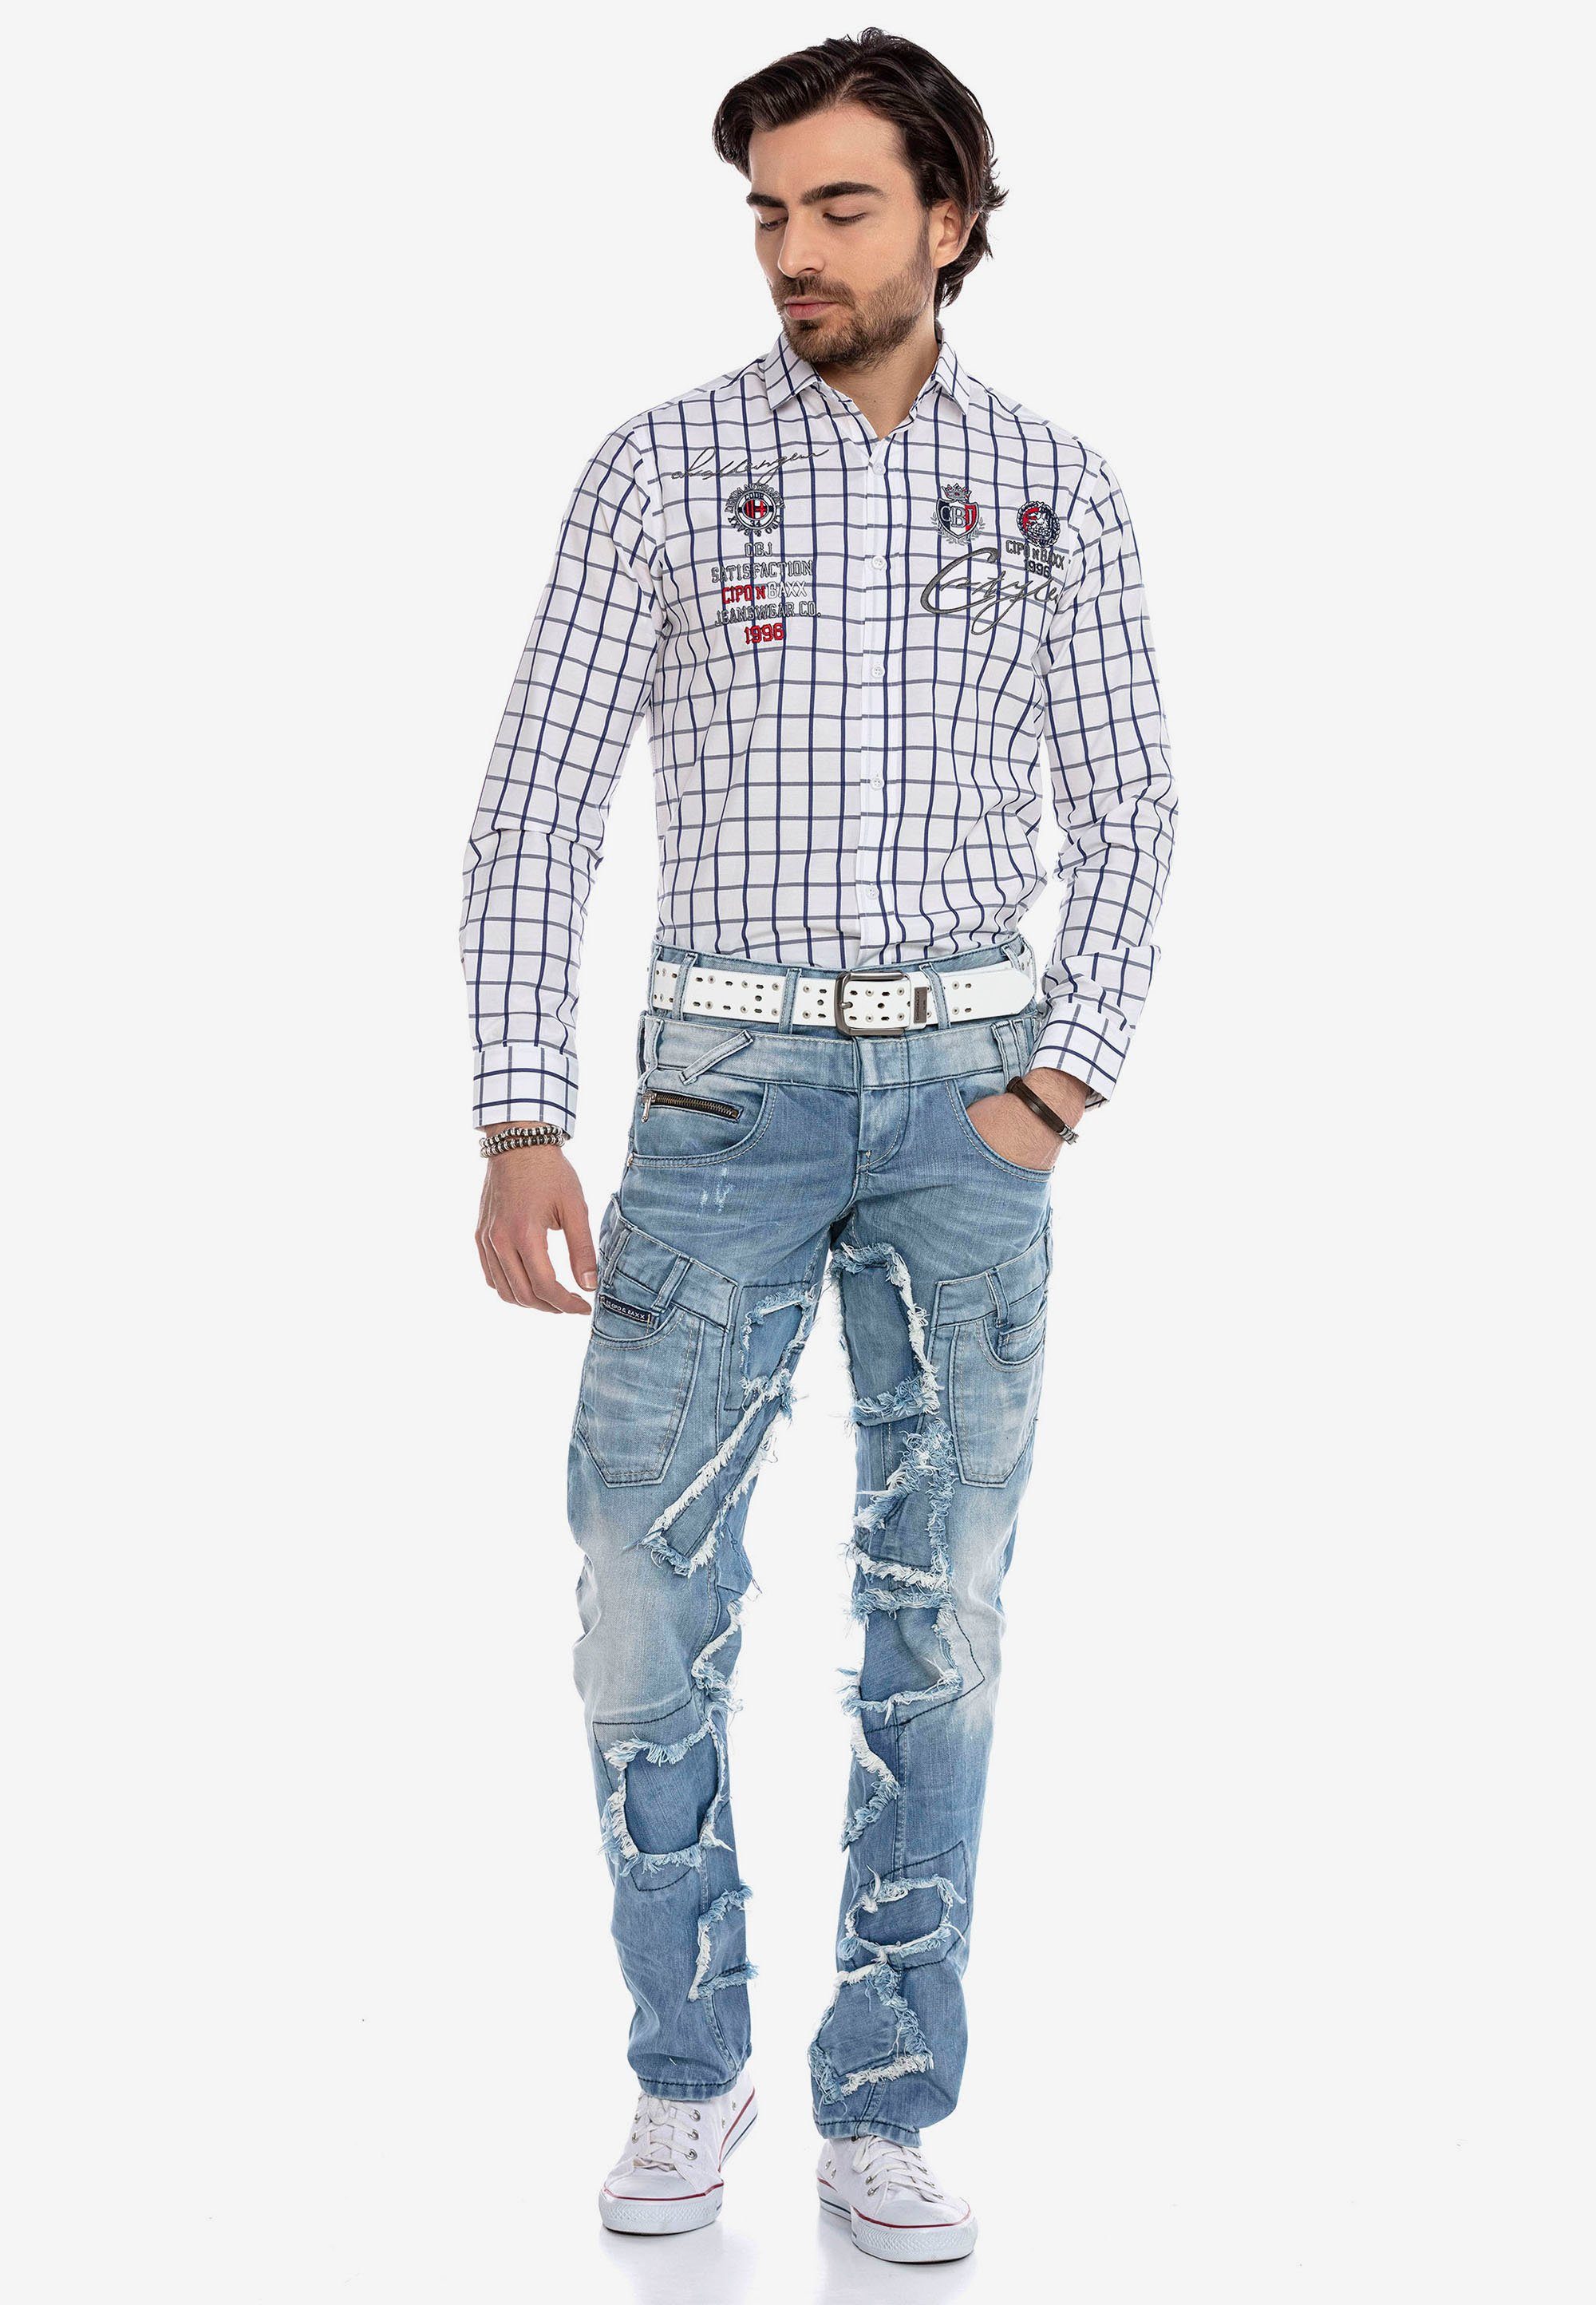 Patchwork-Design trendigen Bequeme Baxx im Cipo & Jeans